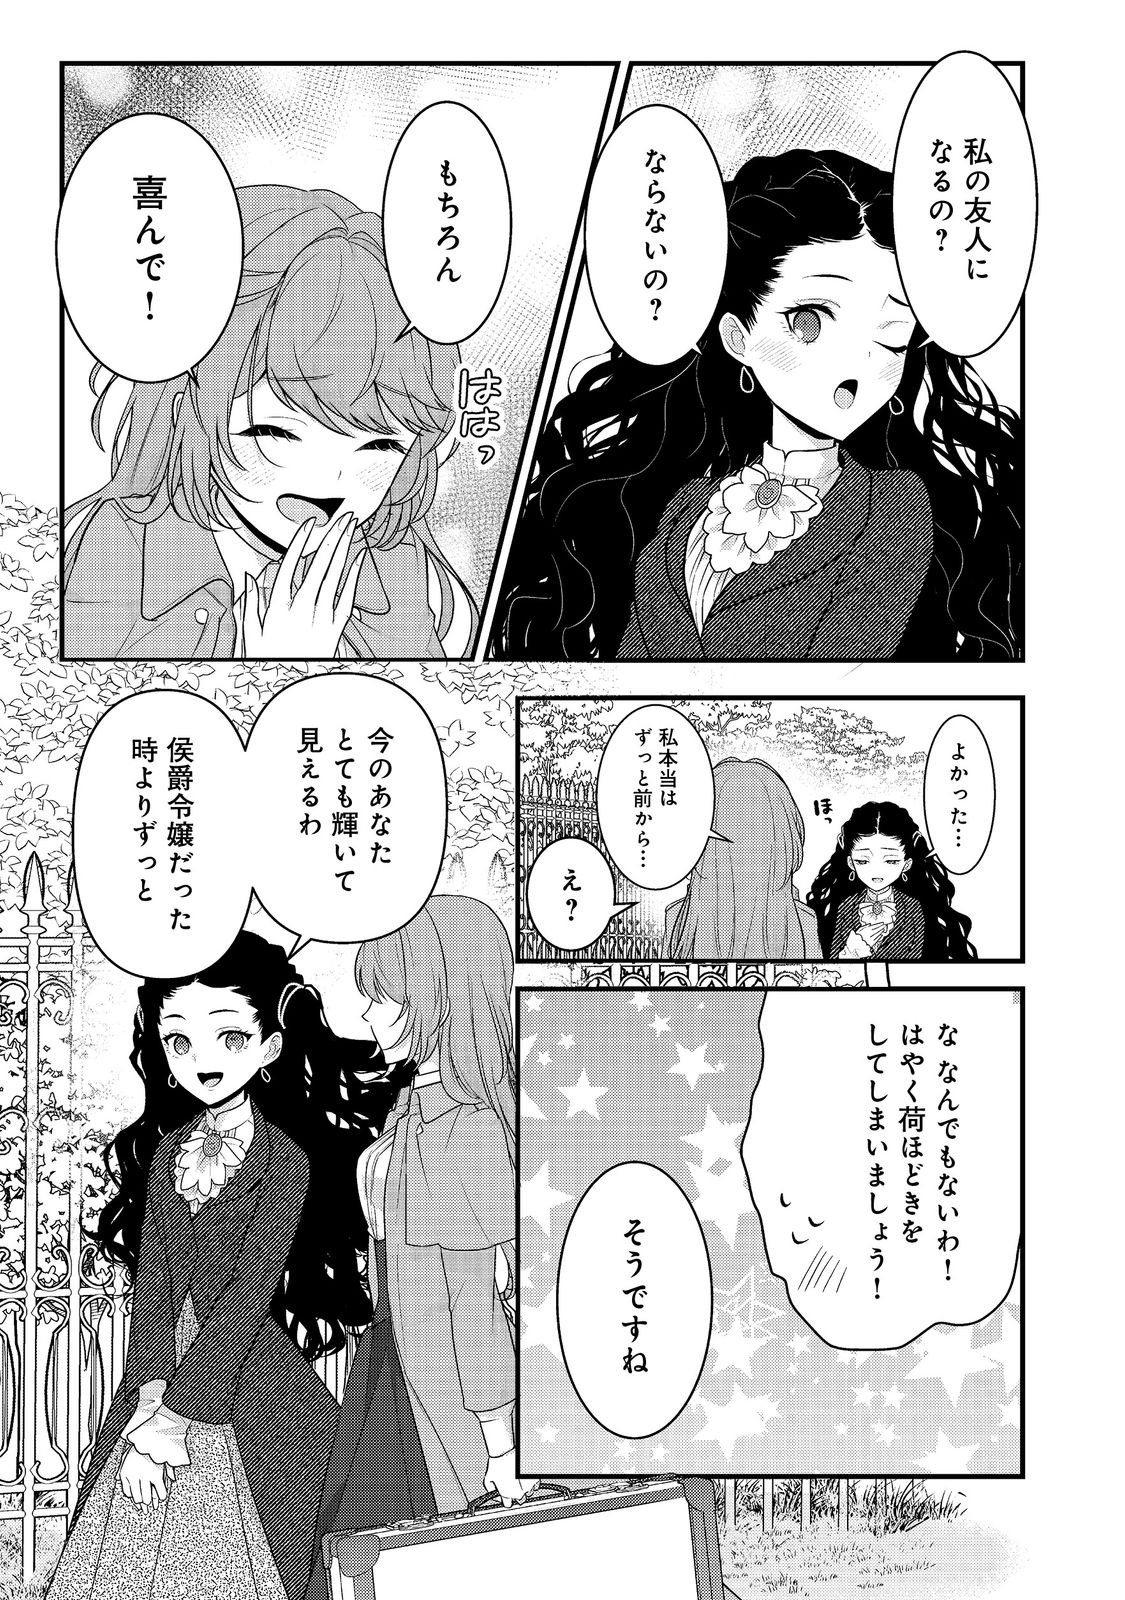 Kanjou wo Korosu no wo Yameta Moto Koushaku Reijou wa, Minna ni Dekiaisareteimasu! - Chapter 1 - Page 17